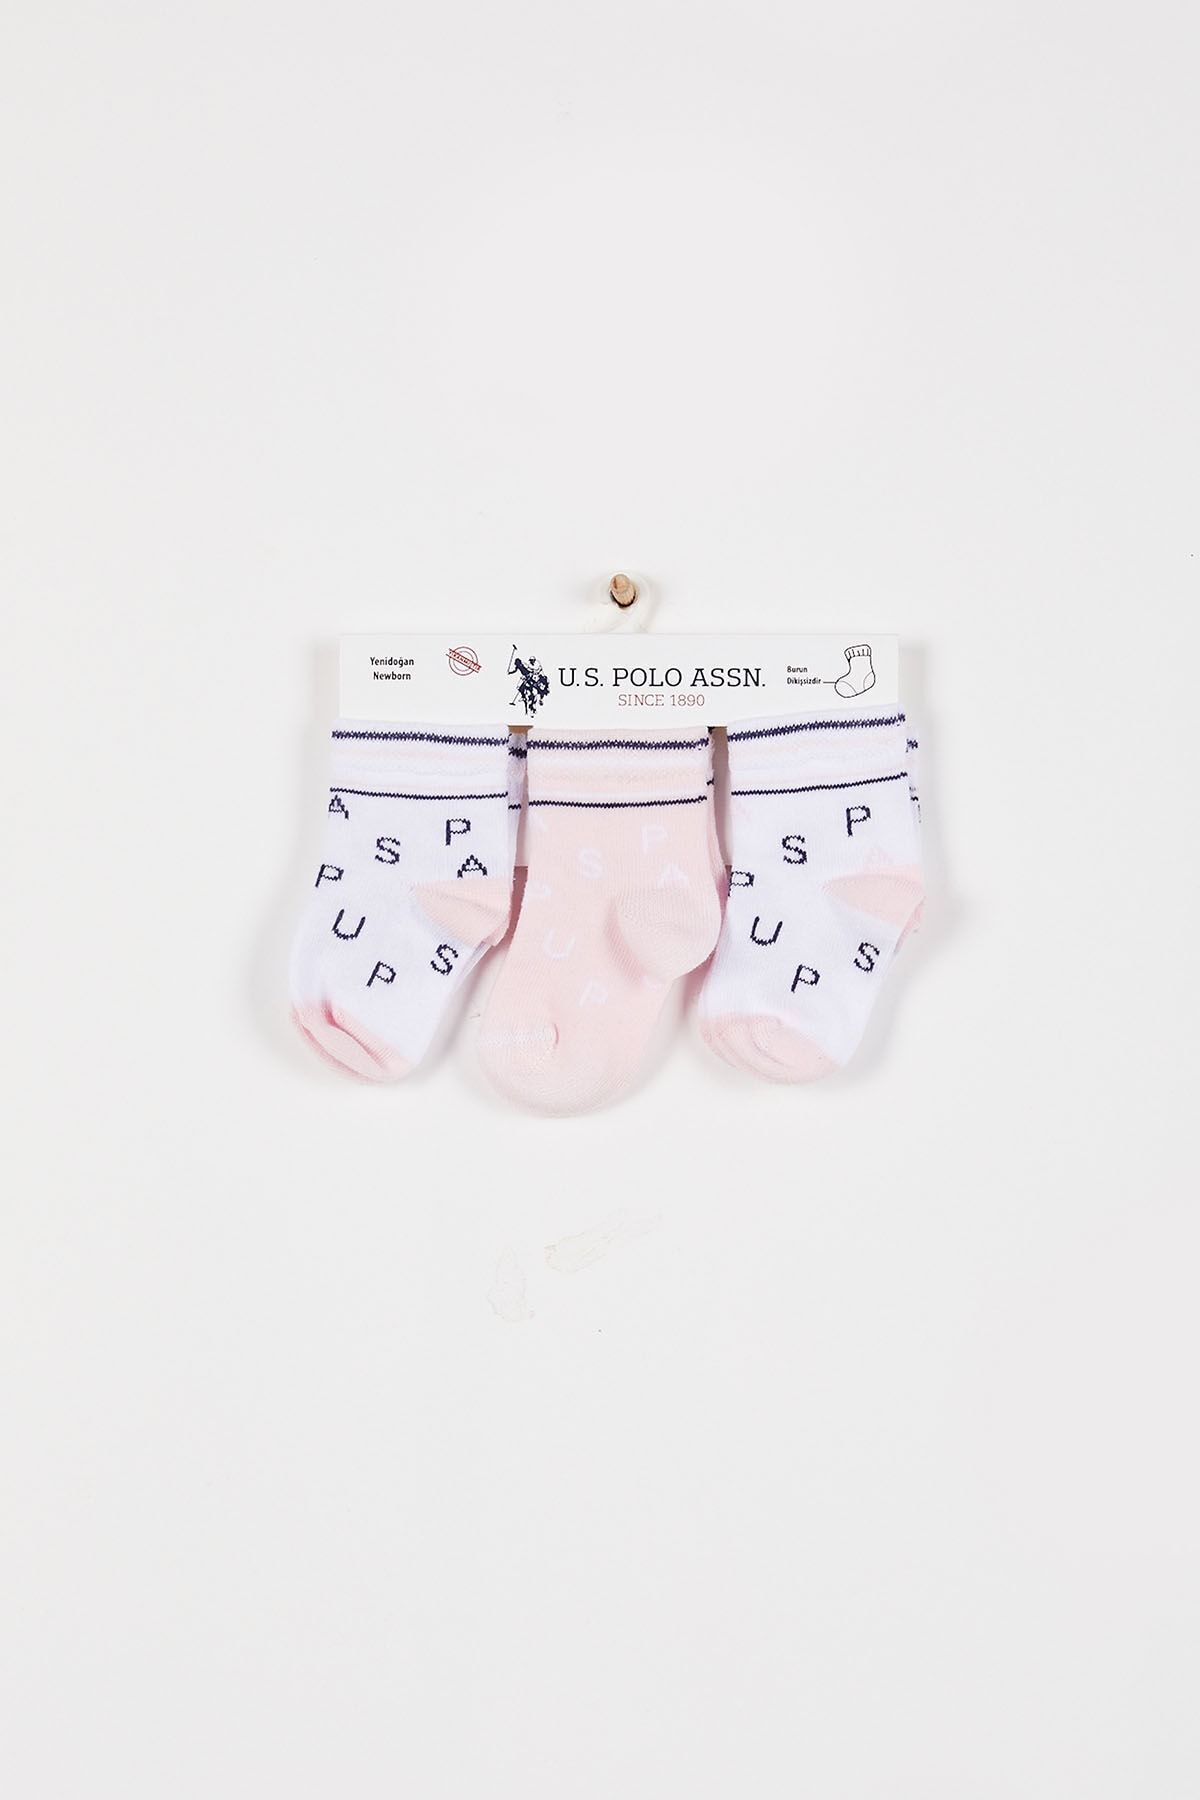 U.S. Polo Assn. Alphabet Beyaz Kız Bebek Çorap